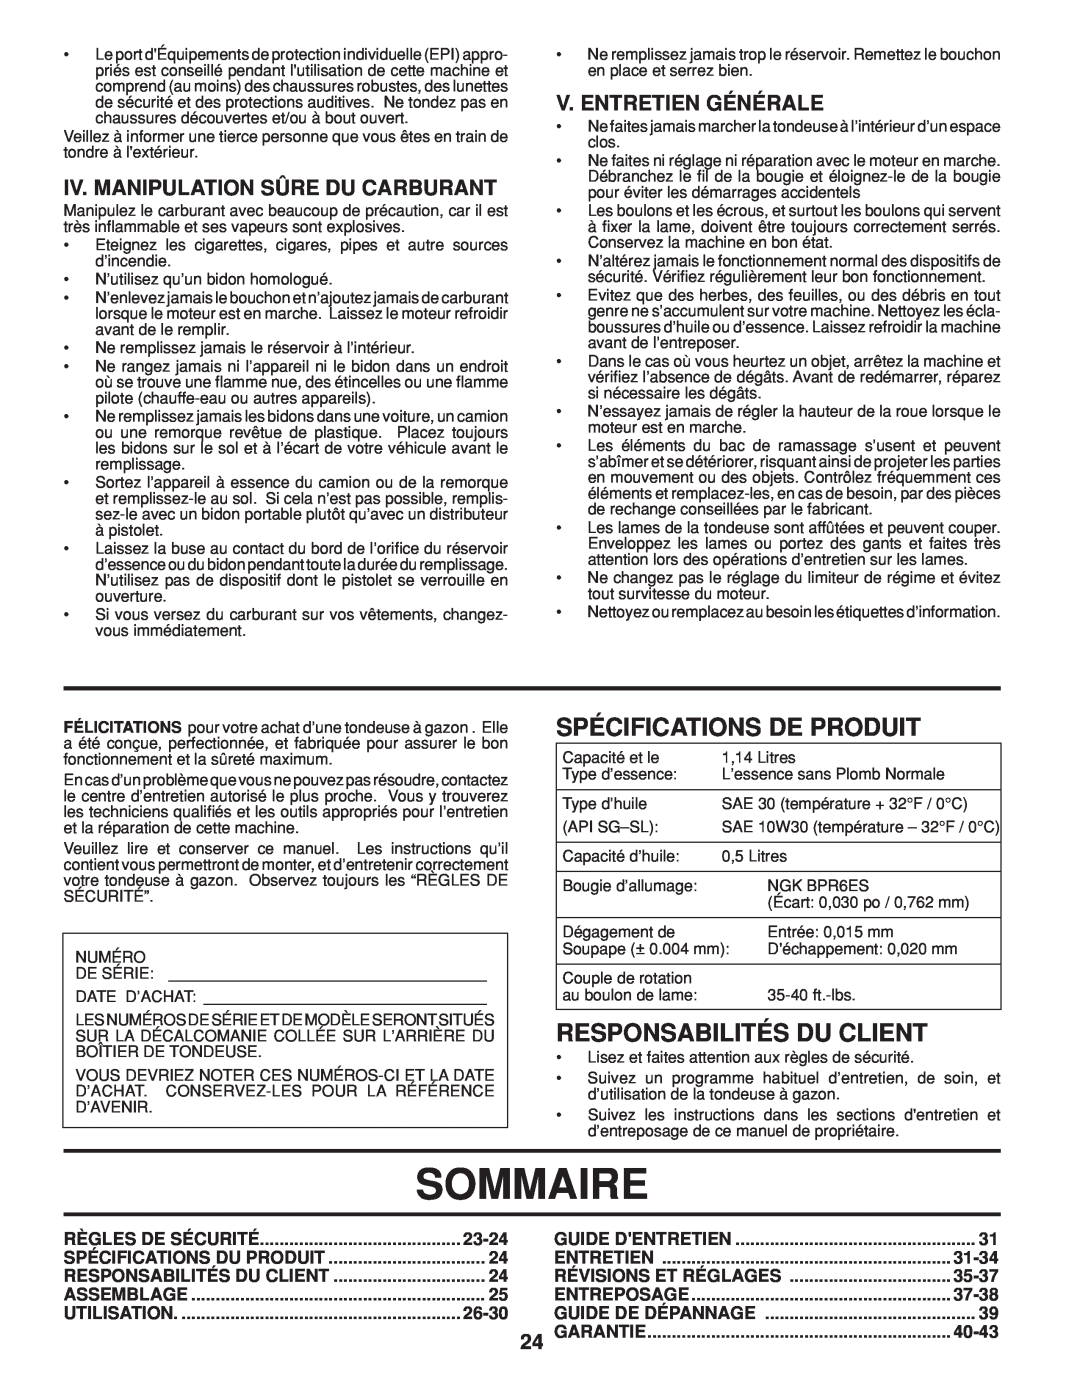 Husqvarna HU800AWD Sommaire, Spécifications De Produit, Responsabilités Du Client, Iv. Manipulation Sûre Du Carburant 